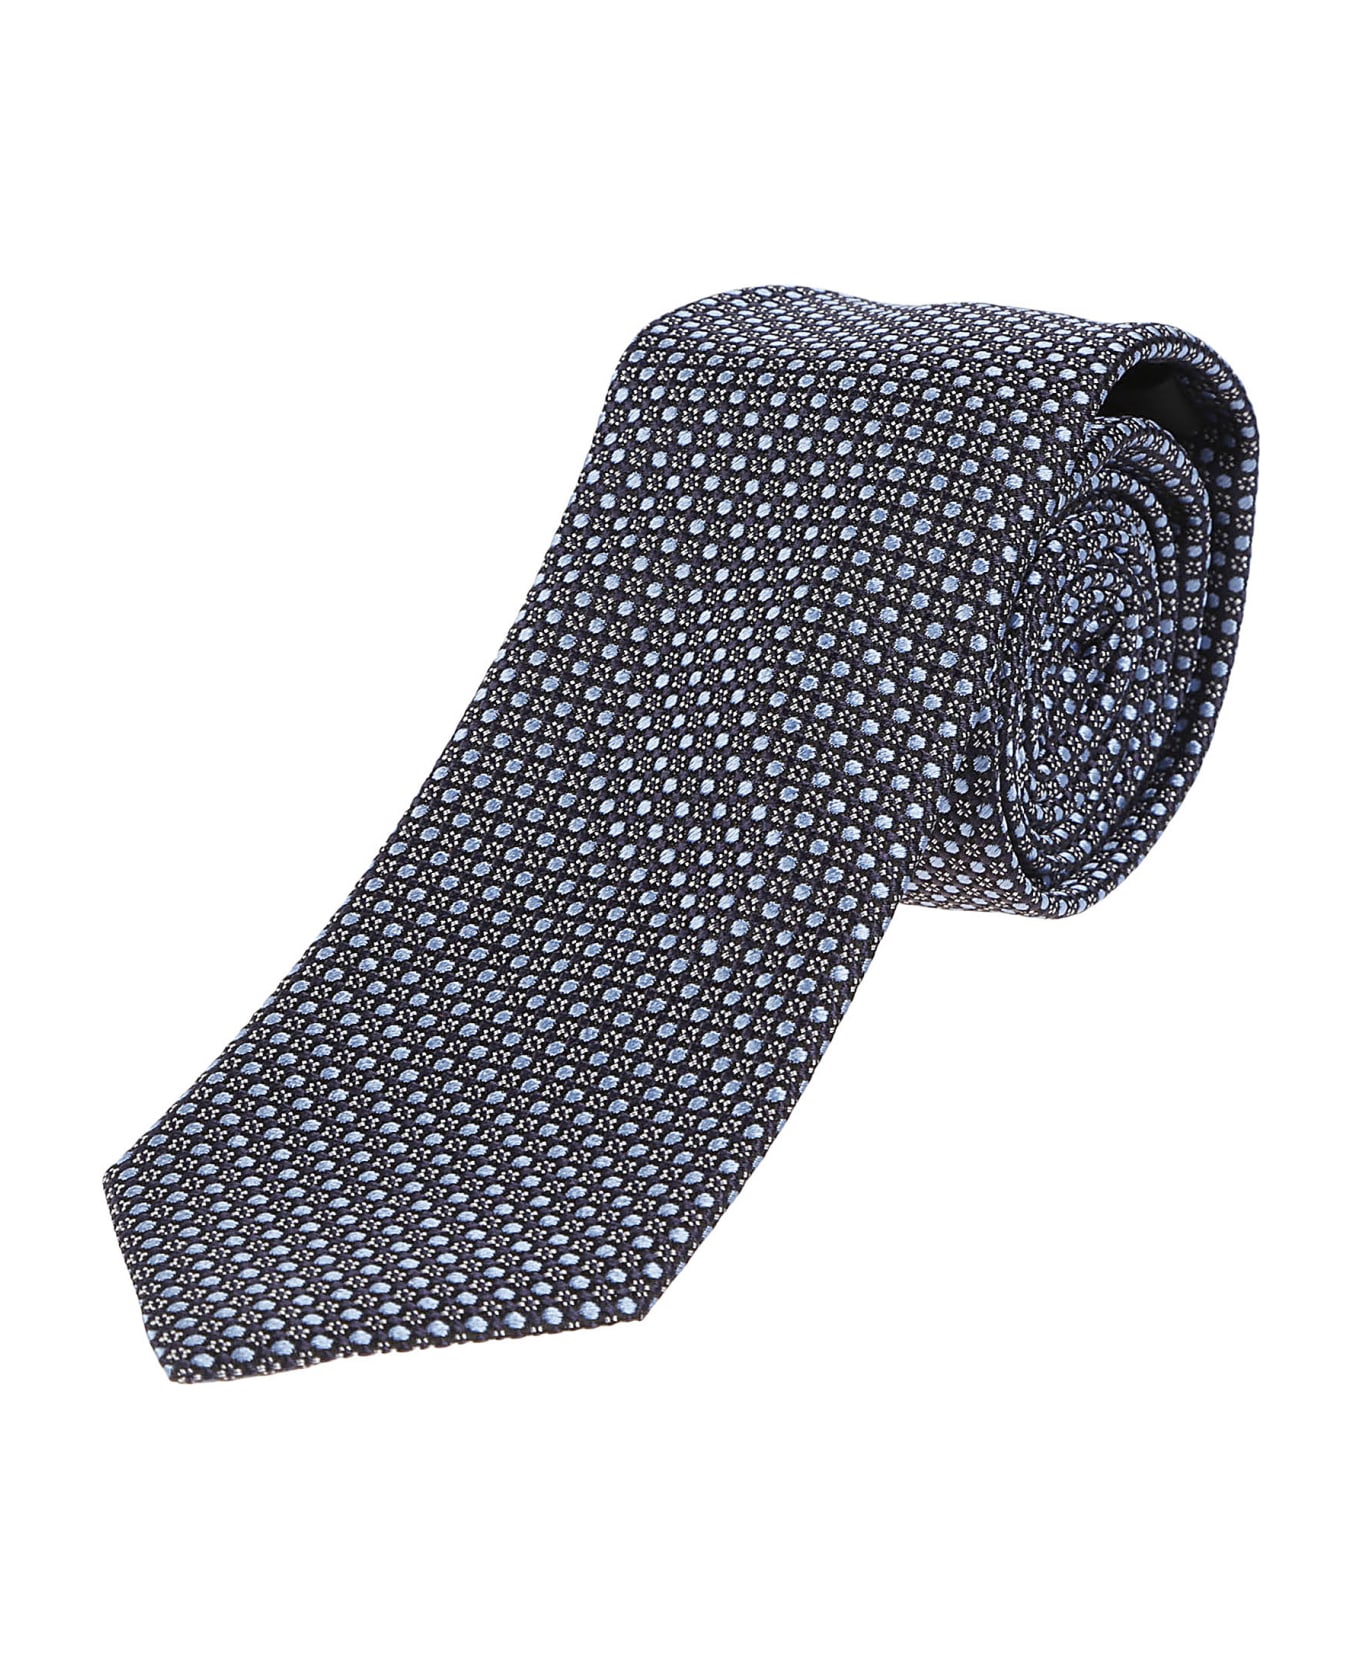 Zegna Lux Tailoring Tie - Blu Navy ネクタイ